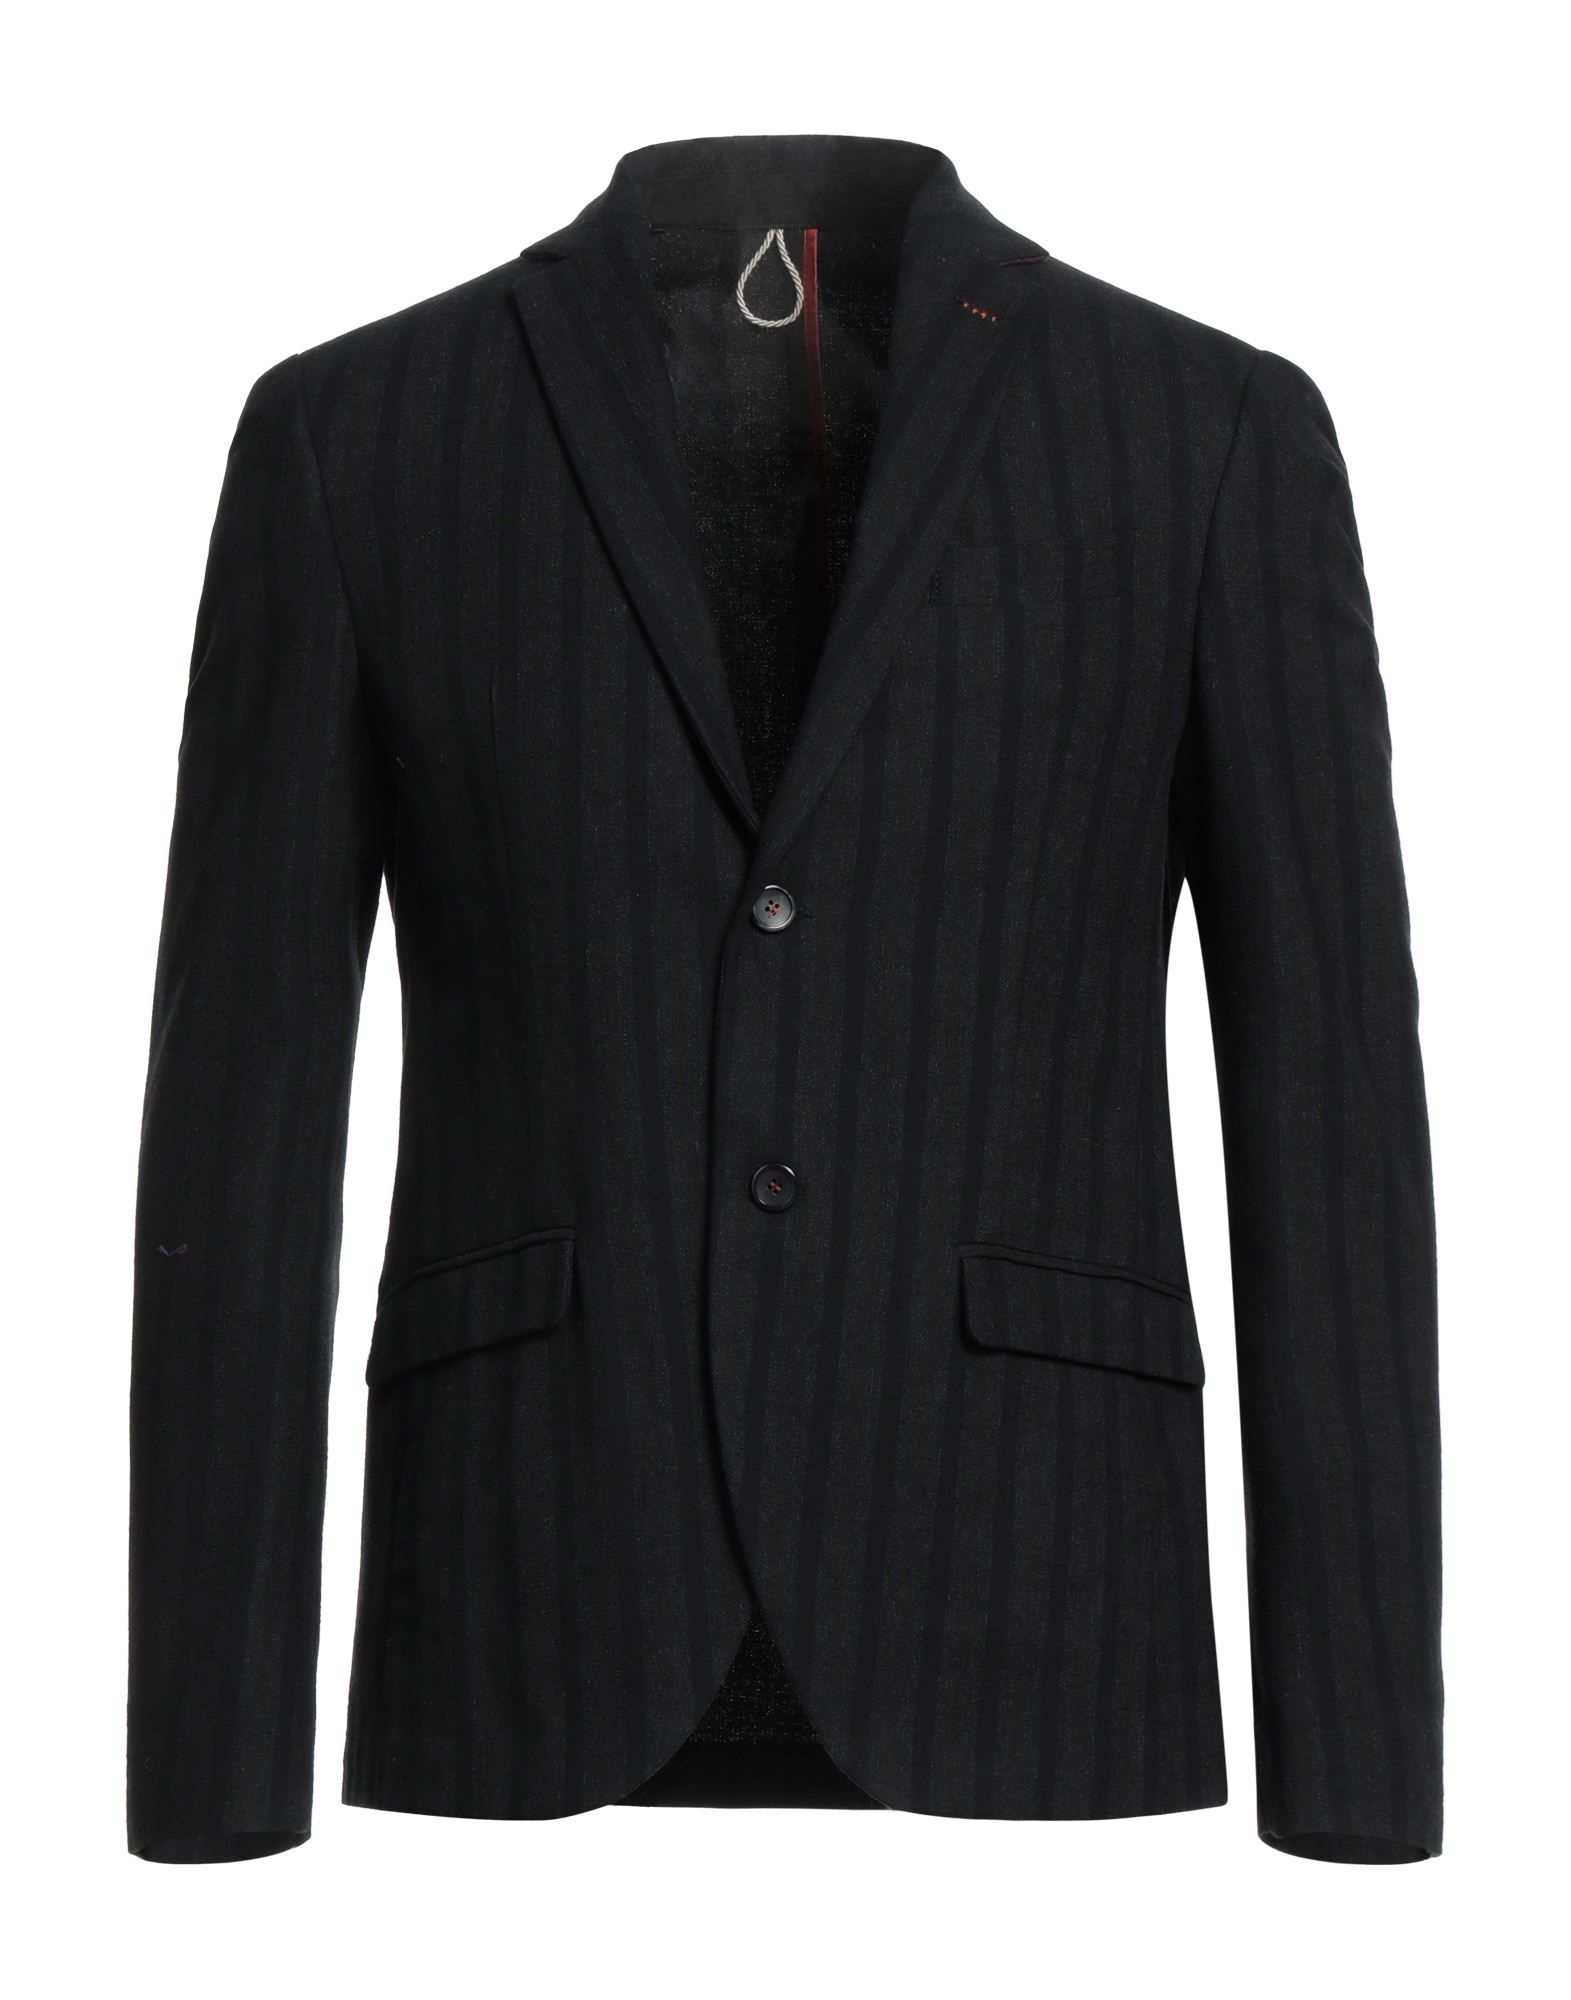 L.B.K. Suit jackets